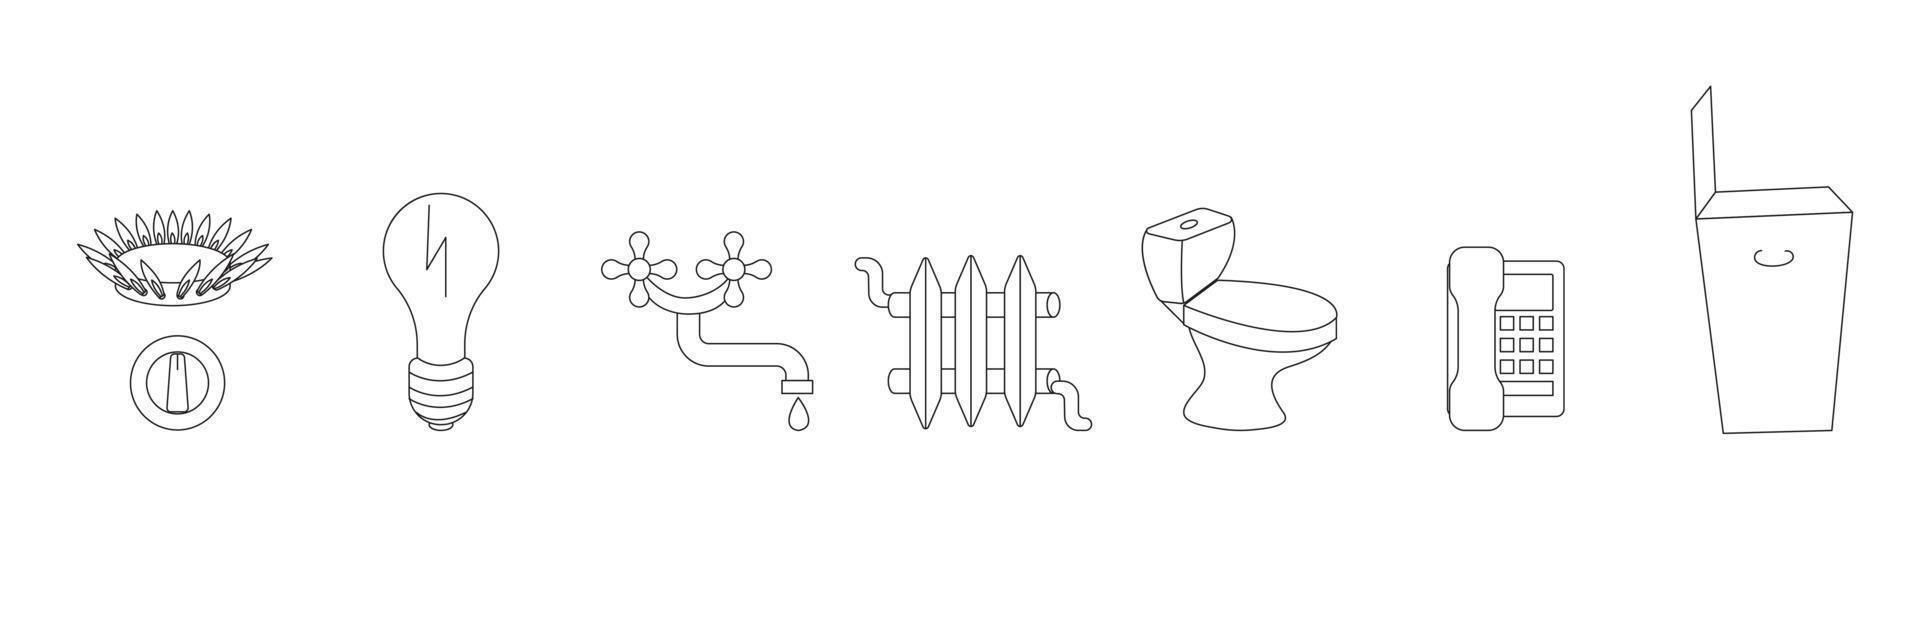 uppsättning ikoner i doodle stil gas, elektricitet, vatten, värme, finslipa kommunikation avlopp, telepn, förutom sophämtning. vektor